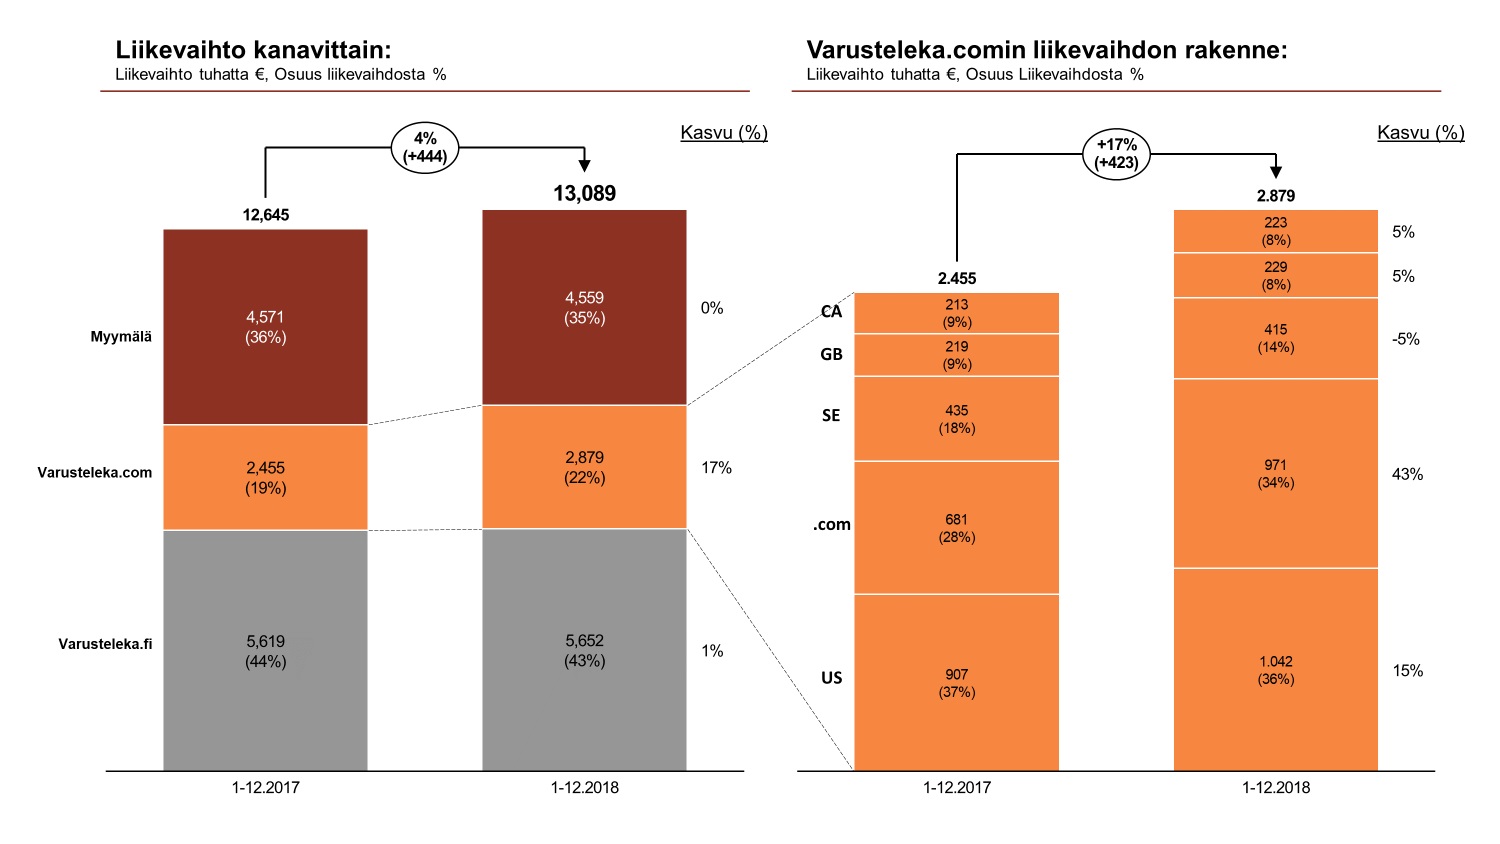 Liikevaihto kanavittain ja liikevaihdon rakenne kuvattu pylväsdiagrammilla. Liikevaihto 2018  13,089 tuhatta €, josta myyymälä 4,559 t € (35%) - kasvu 0%, .com 2,879 t € (22%) - kasvu 17%, .fi 5,652 t € (43%) - kasvu 1%.